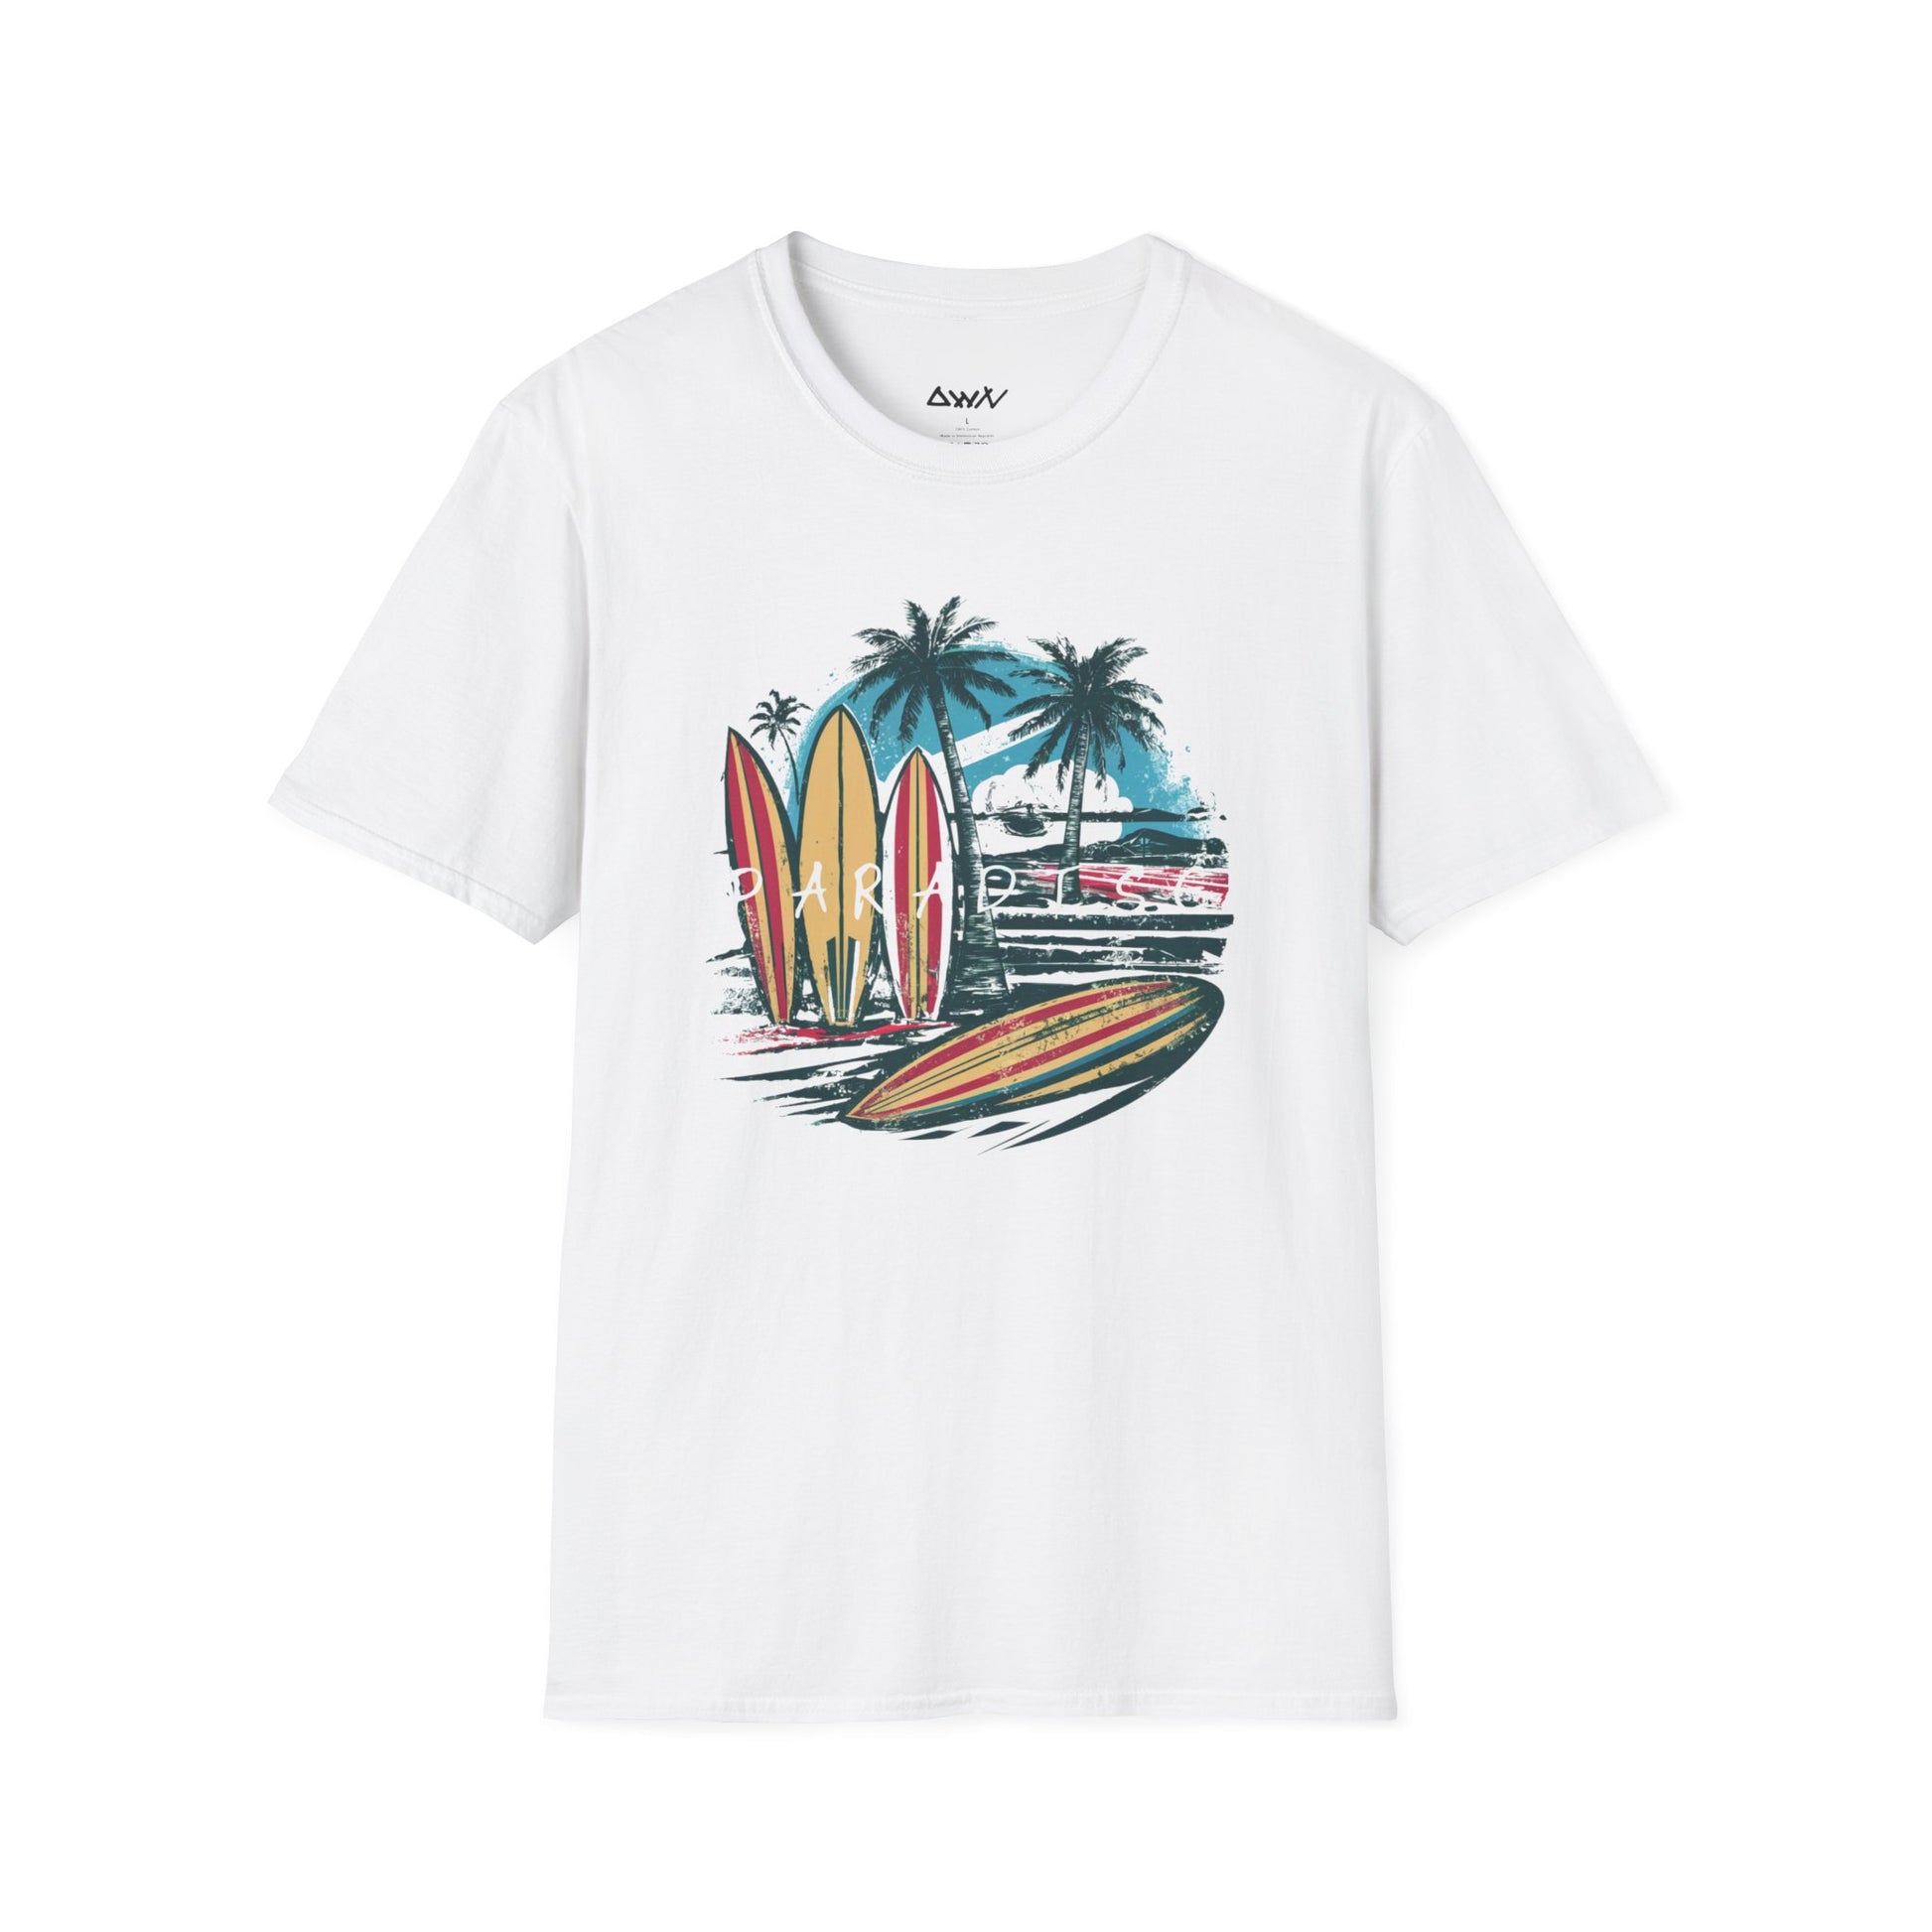 Surf's Paradise: Vintage Waves T-Shirt - DwnReverie